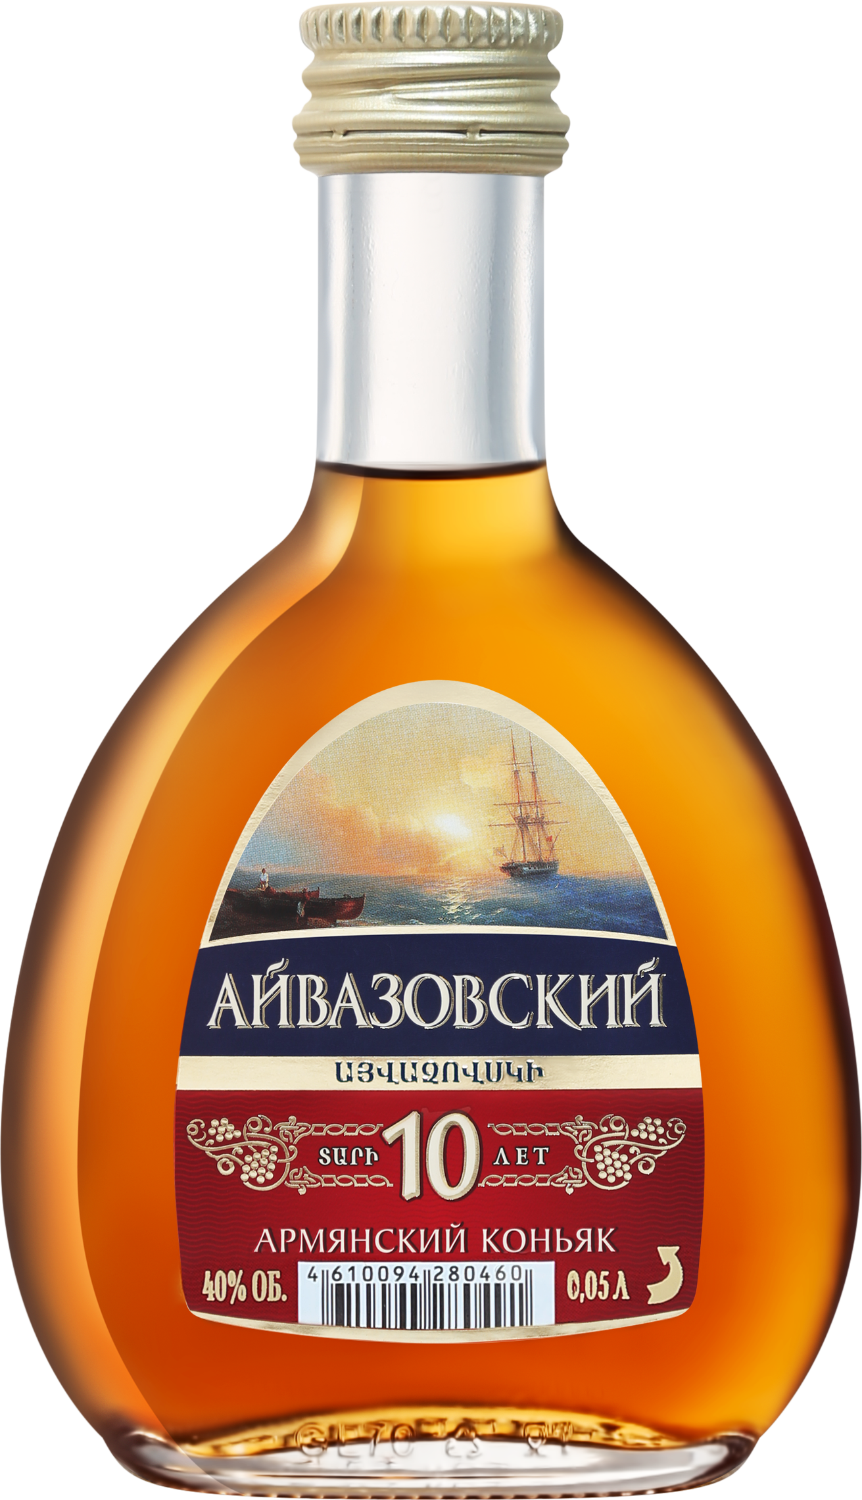 aivazovsky armenian brandy 5 y o Aivazovsky Old Armenian Brandy 10 Y.O.